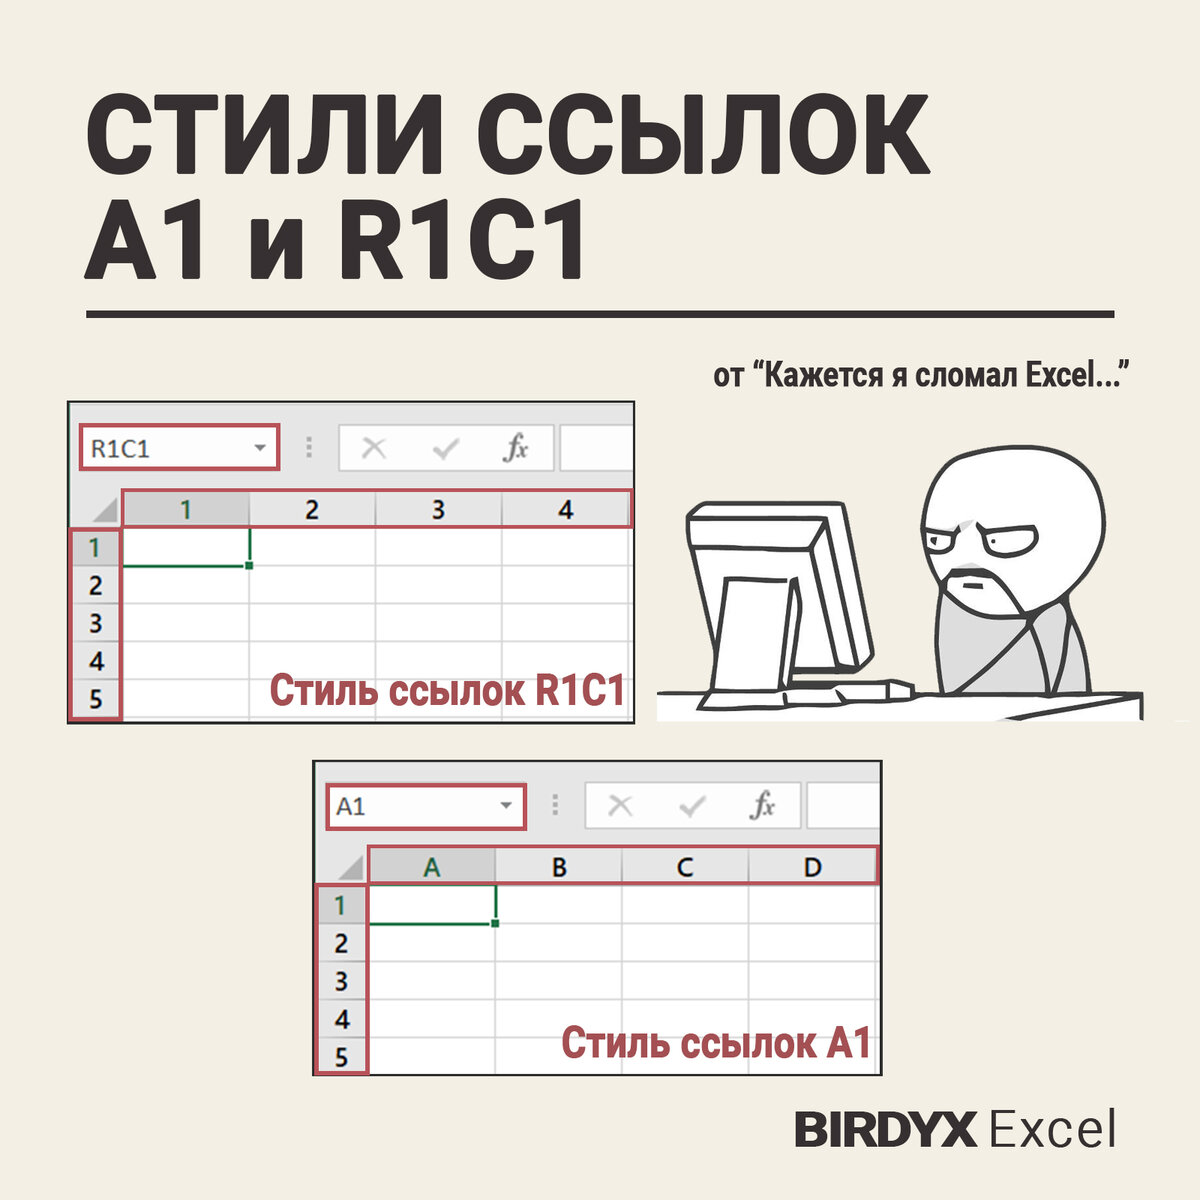 Часто при работе с таблицей Excel происходит изменение привычного нам стиля ссылок А1 (где строки обозначены цифрами, а столбцы - буквами), на стиль ссылок R1C1 (где и строки и столбцы обозначаются...